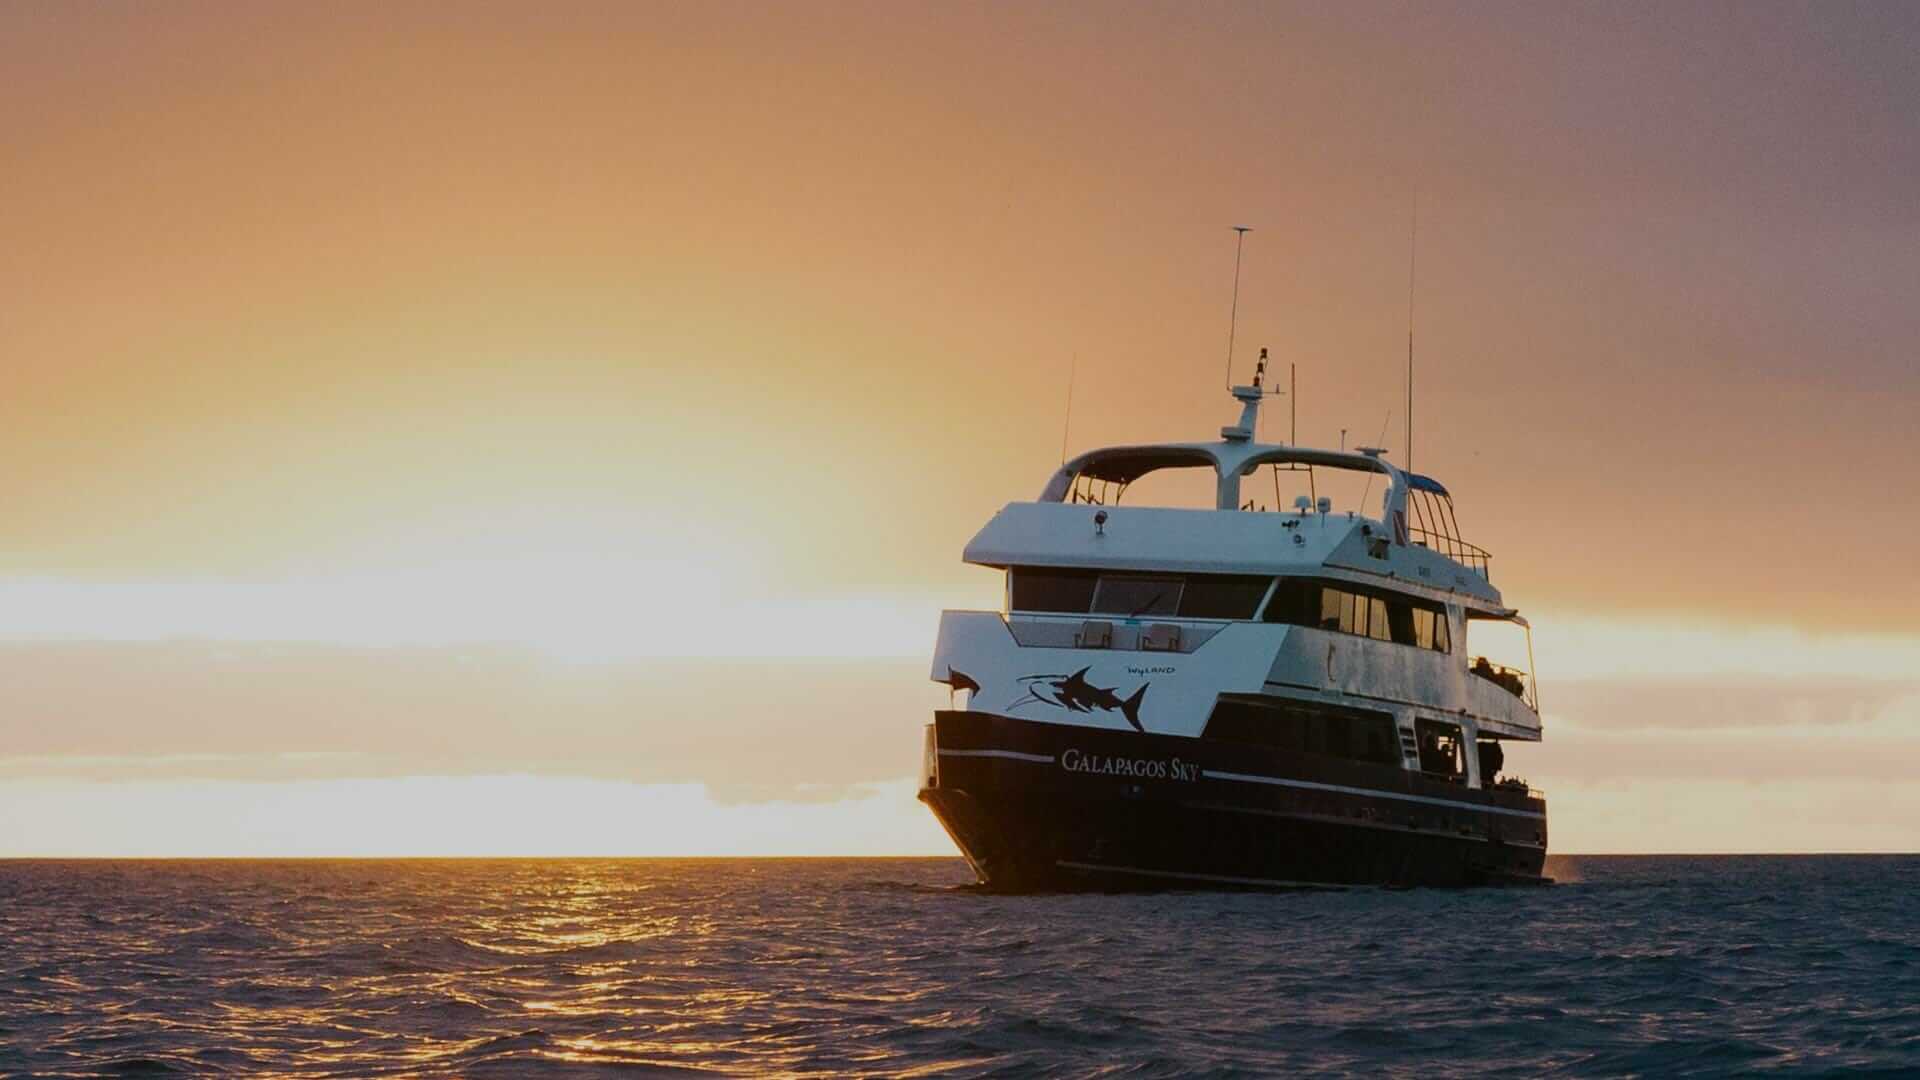 Galapagos Sky-jacht